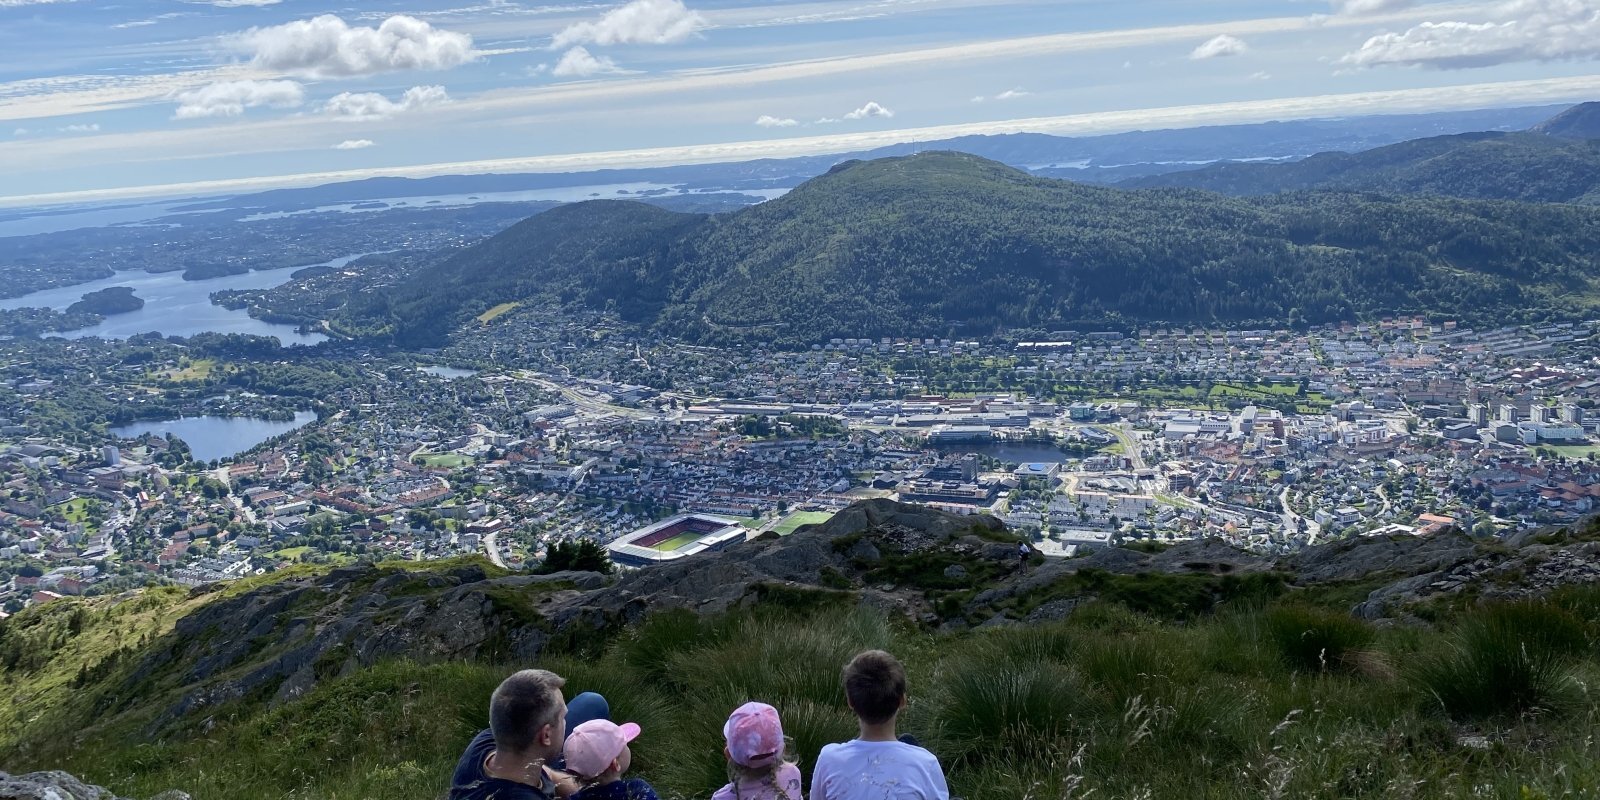 ФОТО. Фьорды, ледники, гречка и коровы — путешествие с детьми по Норвегии